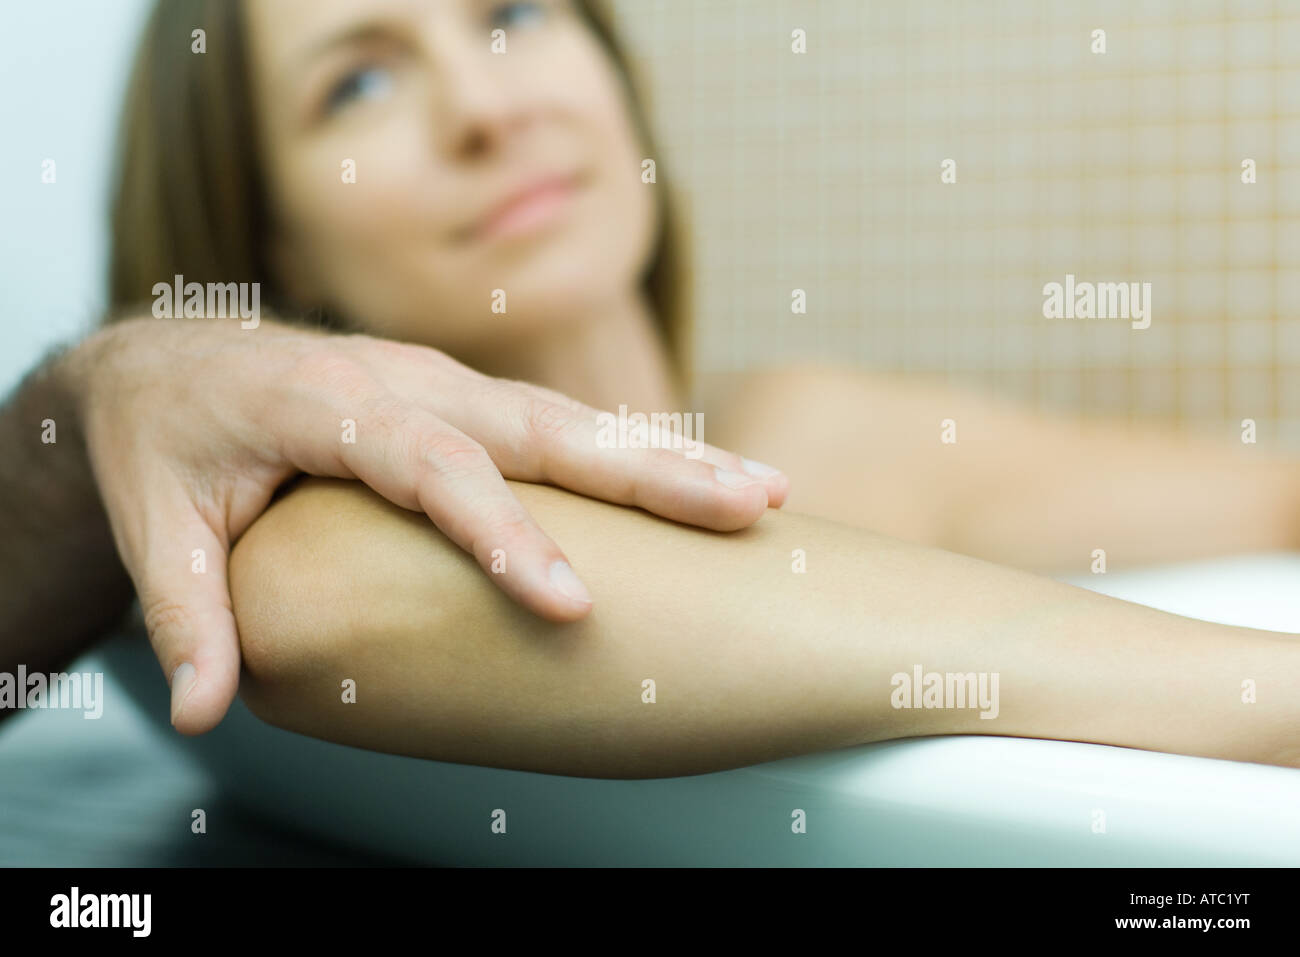 Frau in der Badewanne mit Hand des Mannes auf dem Ellenbogen, Fokus auf Vordergrund, beschnitten Ansicht Stockfoto